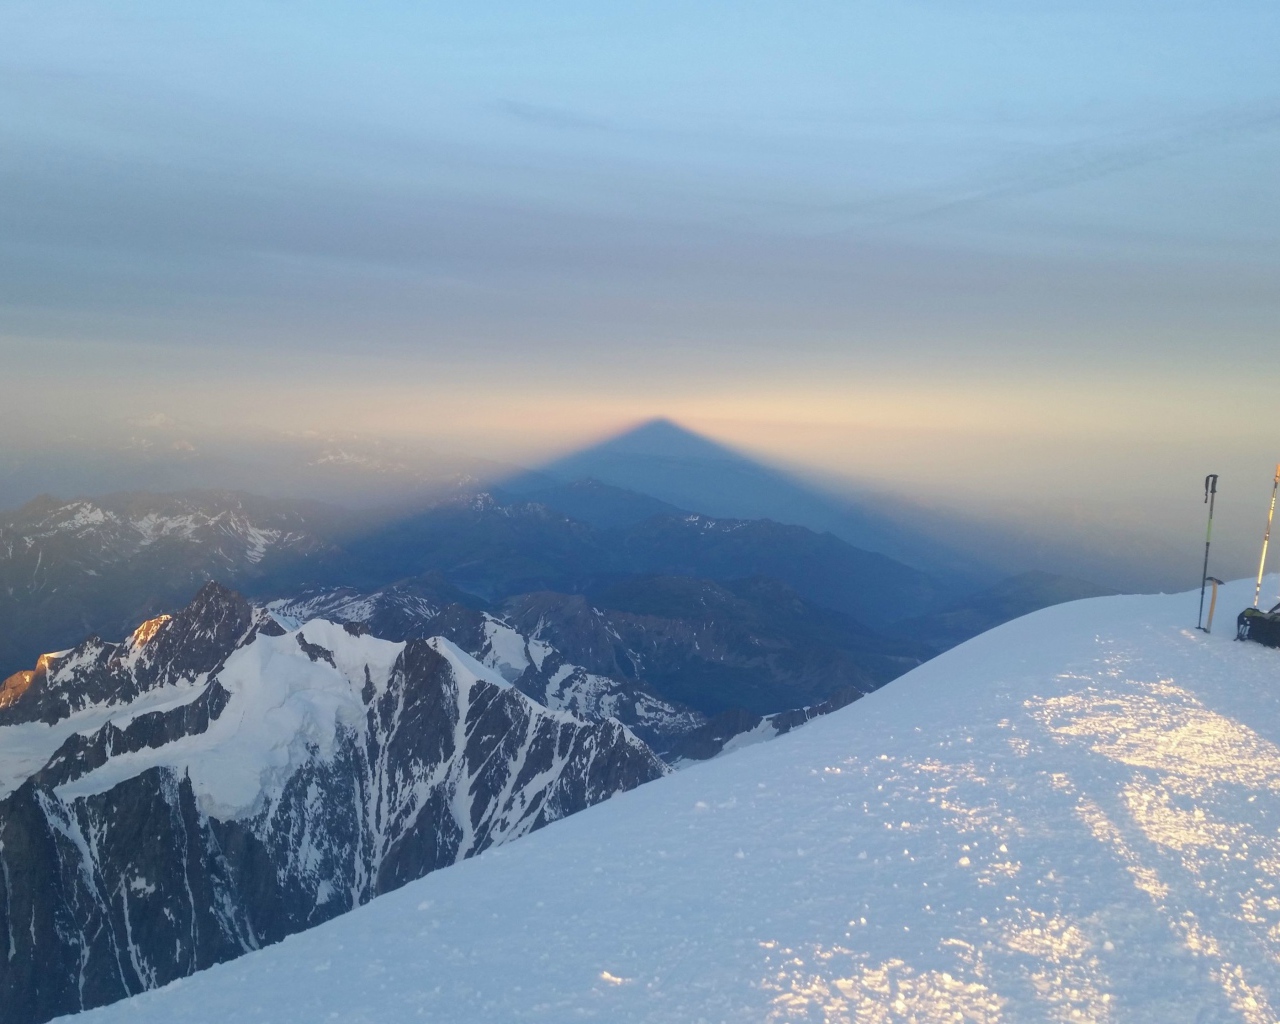 Лыжники на вершине горы перед закатом солнца